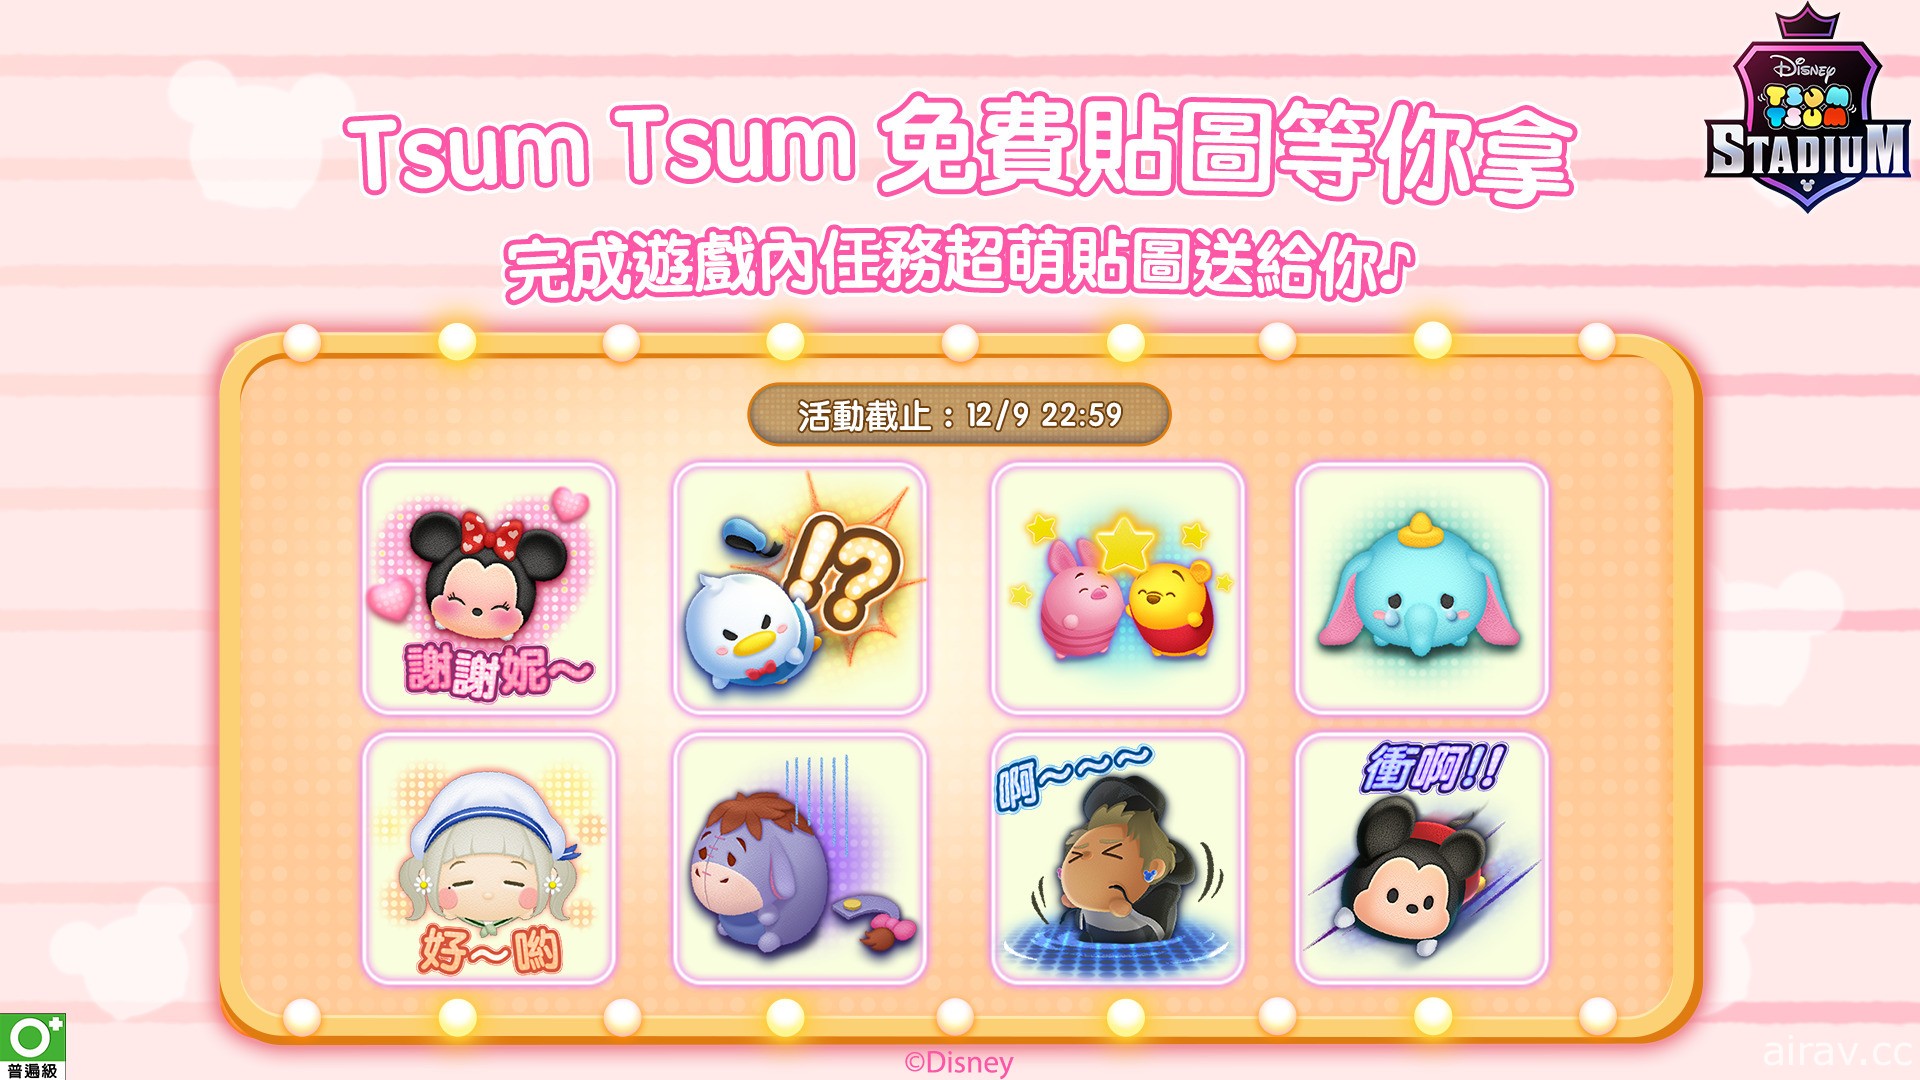 《Tsum Tsum Stadium》推出期間限定免費 LINE 貼圖任務活動